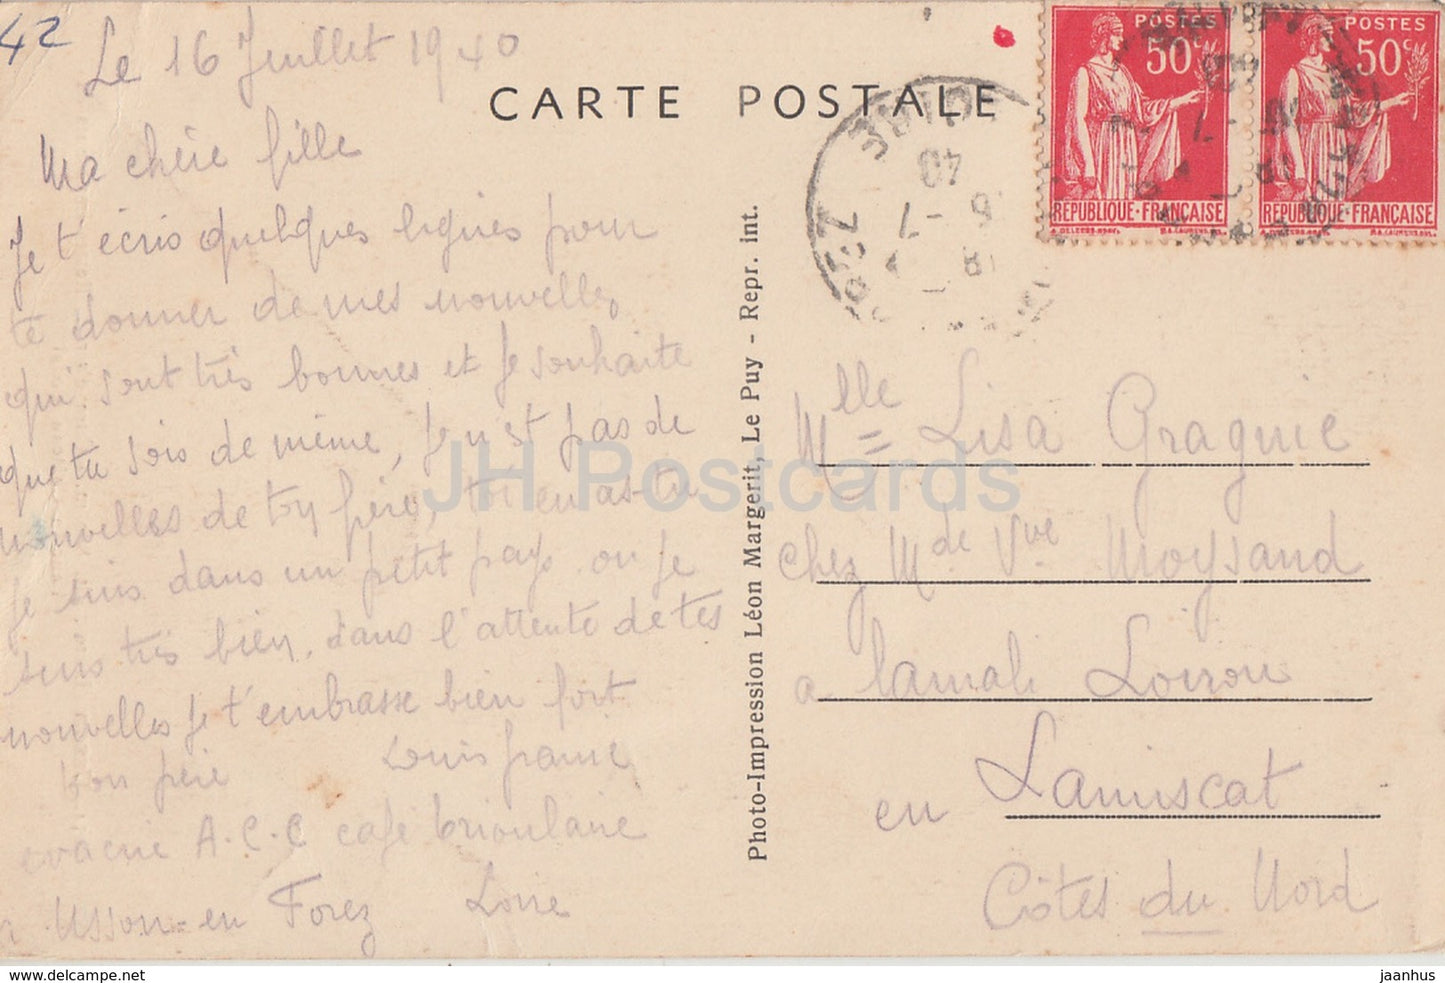 Usson - Cure d'air - Restes imposants de l'ancien Chateau feodal - castle - 3054 - old postcard - 1940 - France - used